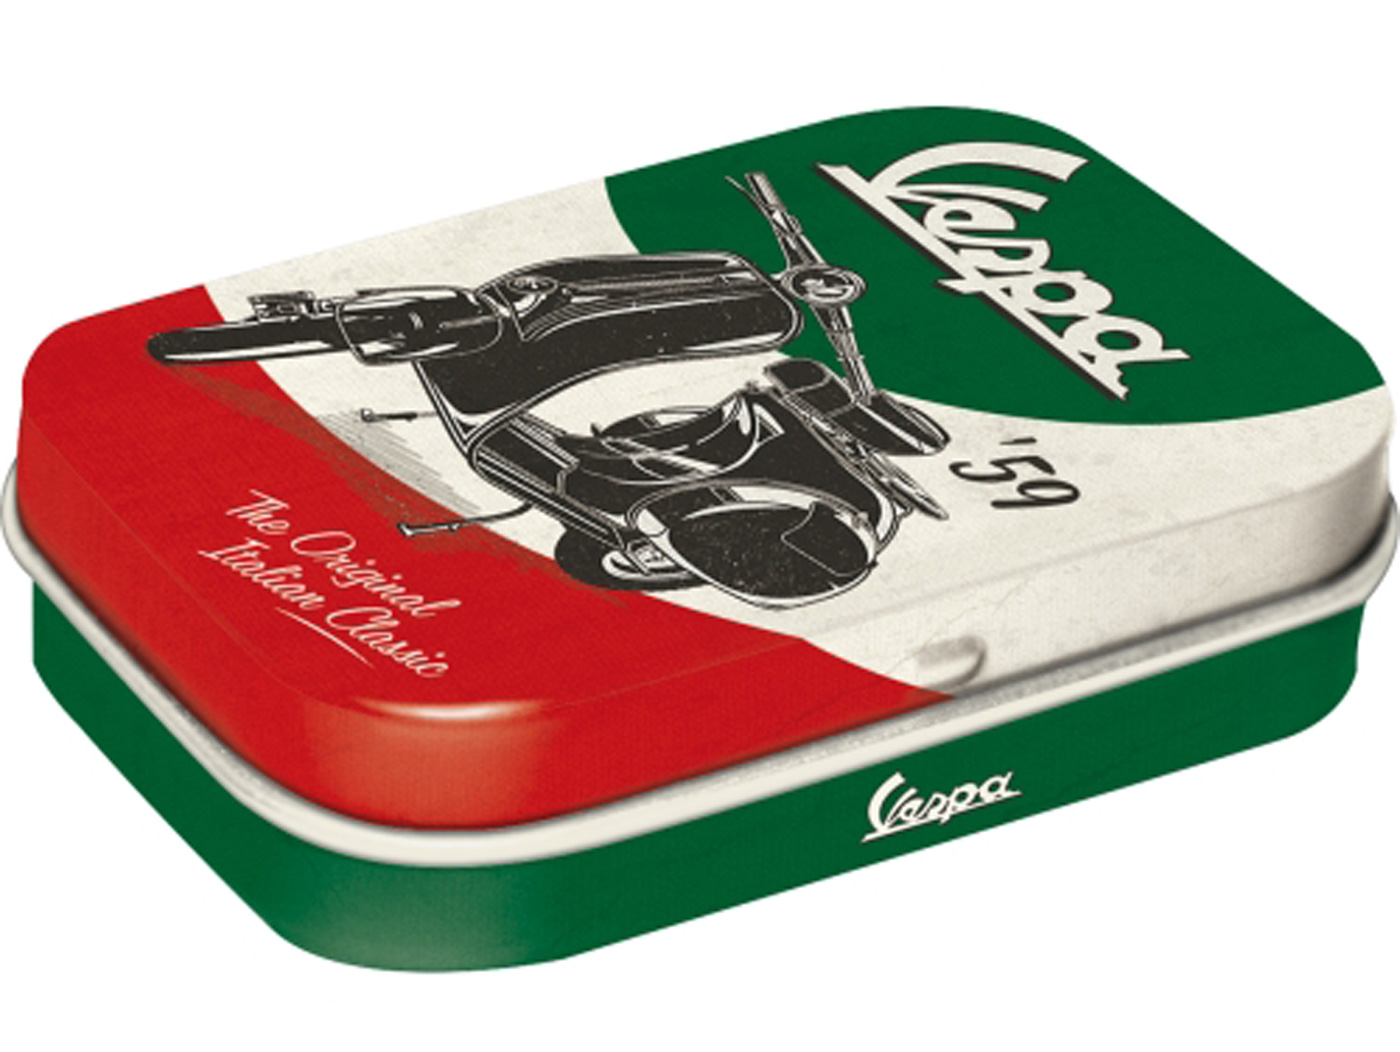 Μεταλλικό κουτί με μέντες Vespa "The Original Italian Classic" Ιδανικό για δώρο